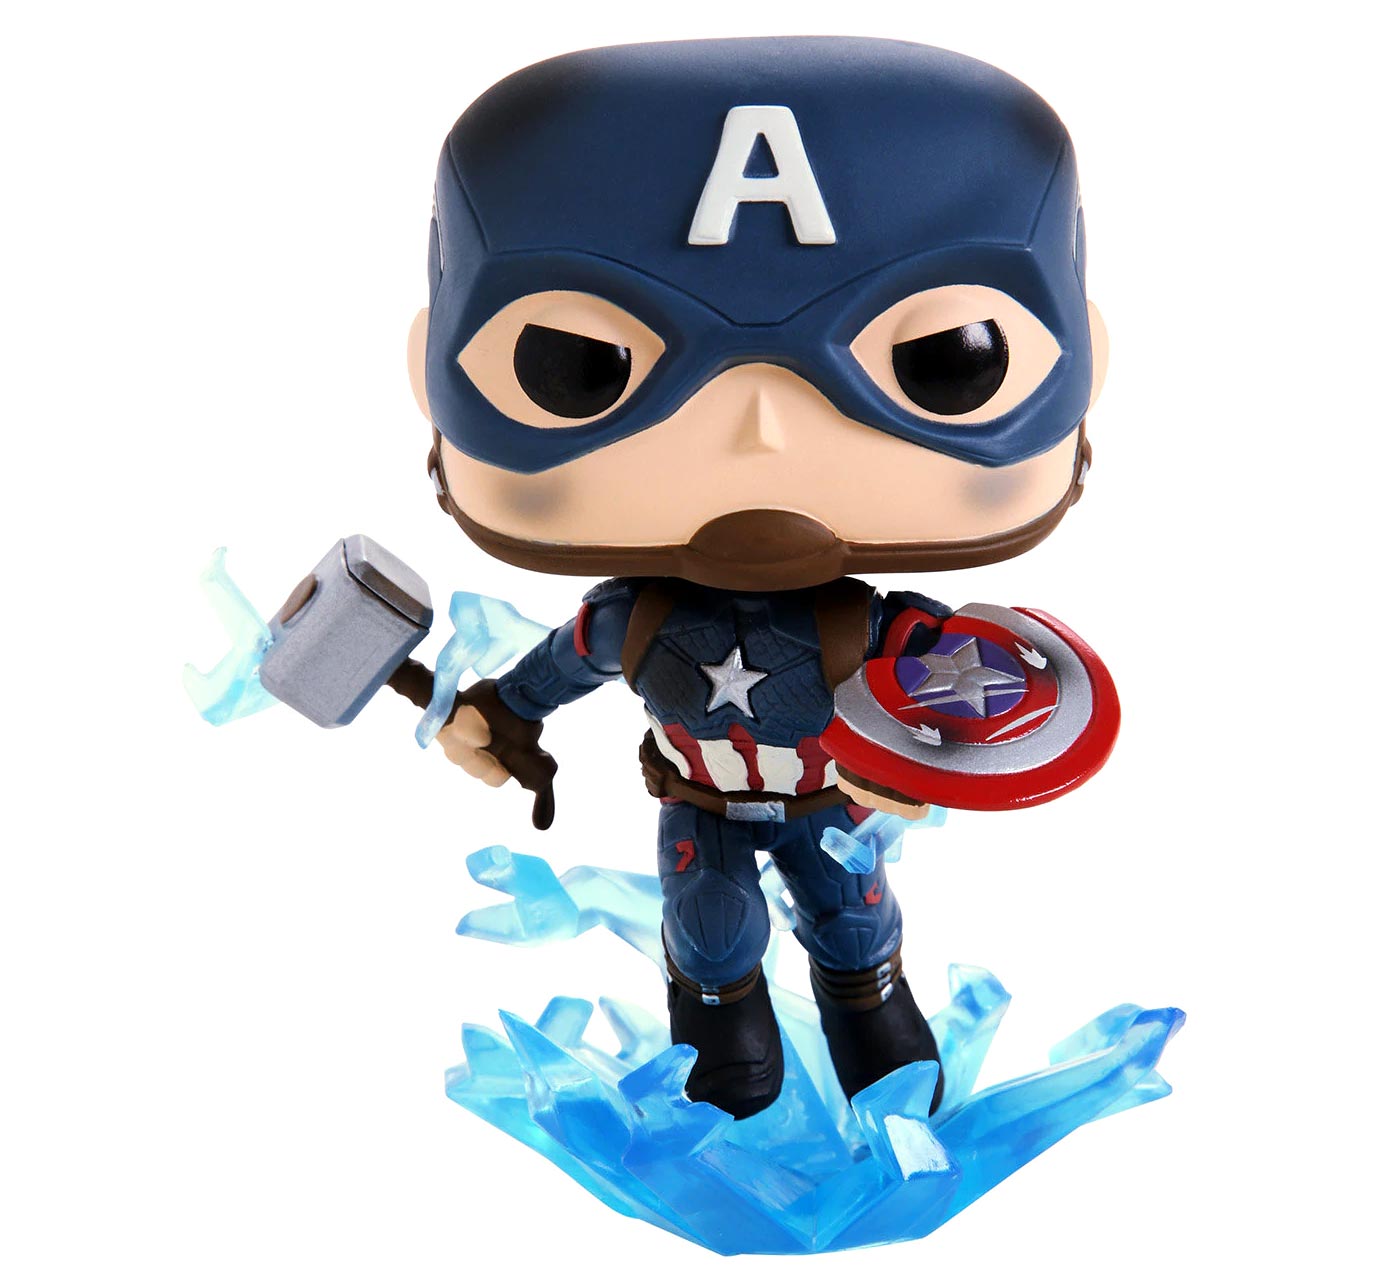 Funko Pop! Avengers: Endgame Captain America Mjolnir Figure